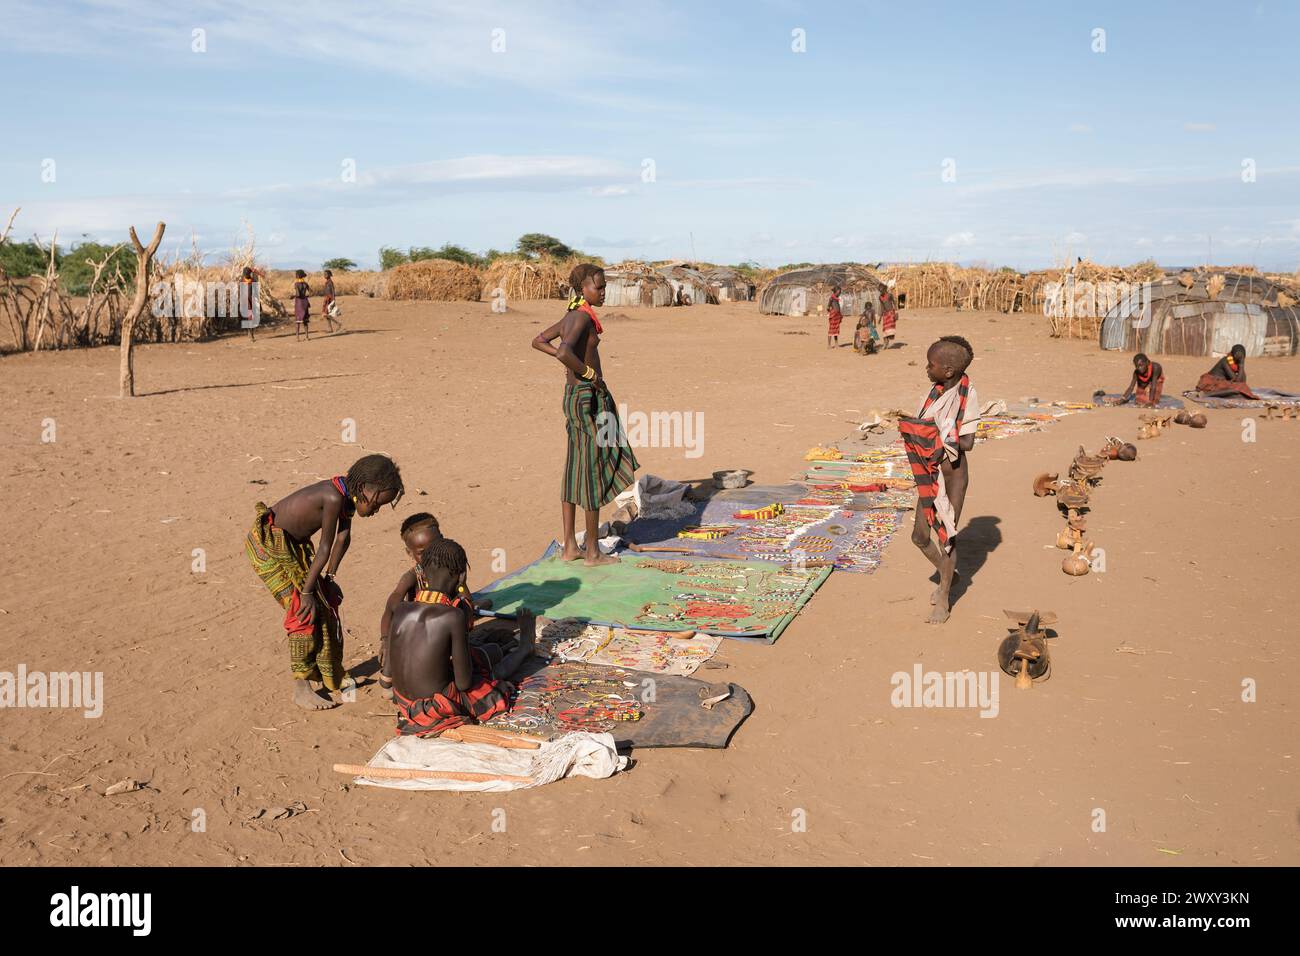 Omorate, Valle dell'Omo, Etiopia - 11 maggio 2019: I bambini della tribù africana Dasanesh offrono souvenir fatti a mano. Daasanach sono etnico Cushitic Grou Foto Stock